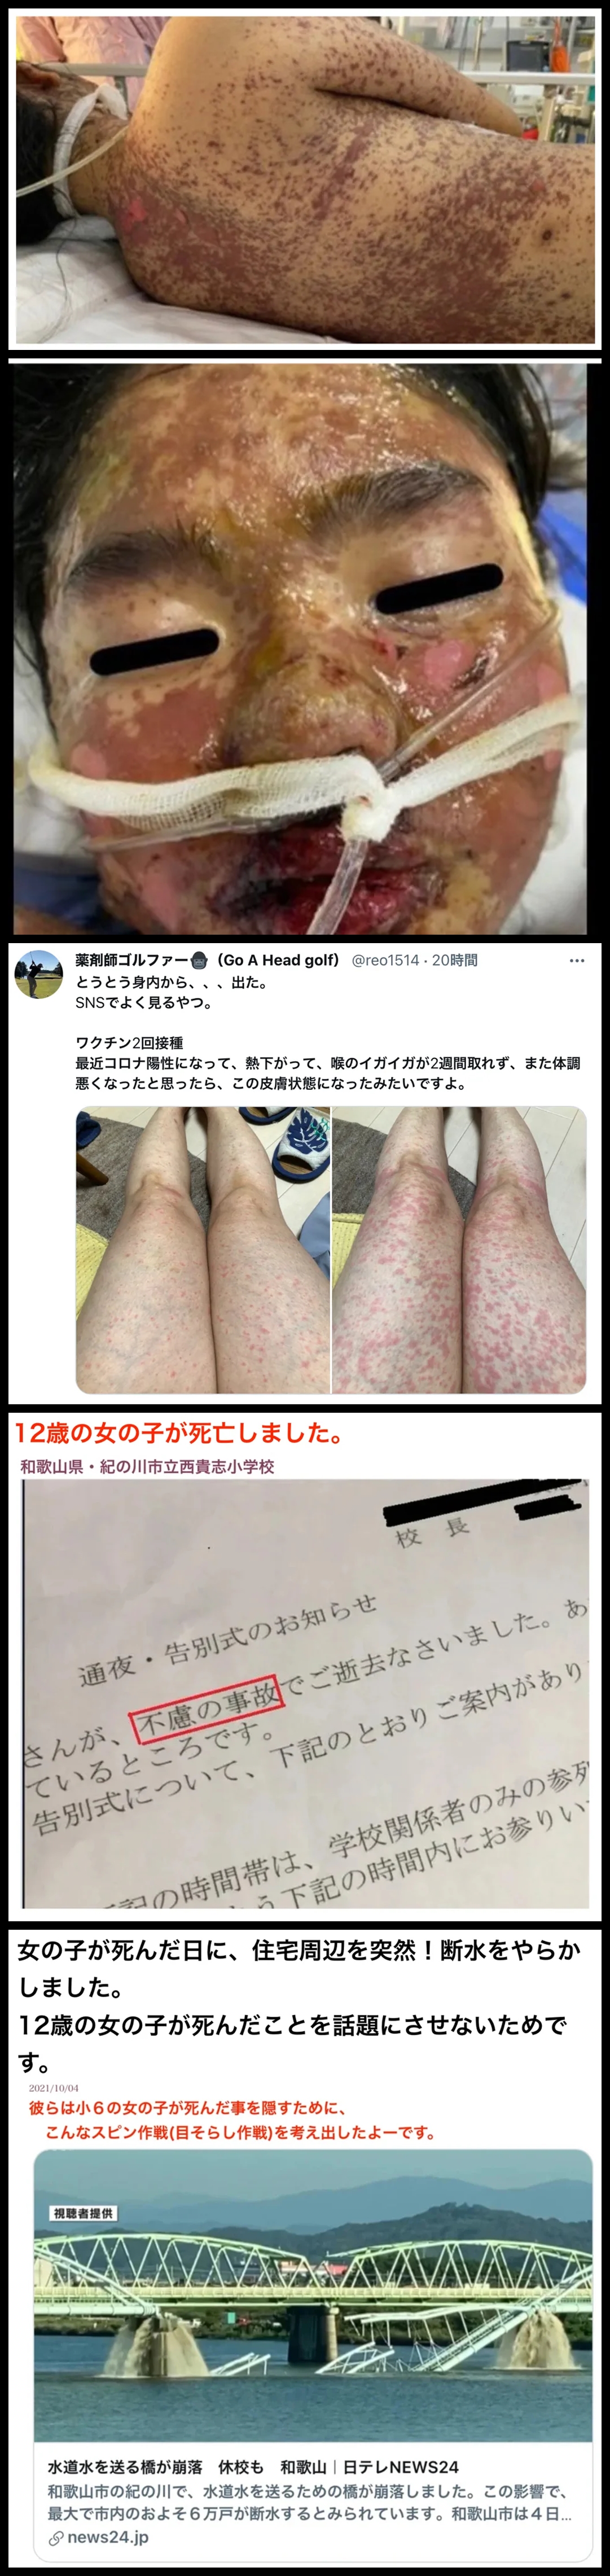 高校生のブログからの引用画像　。毒ワクチンの被害の酷い皮膚症状と水道の目くらましの事故